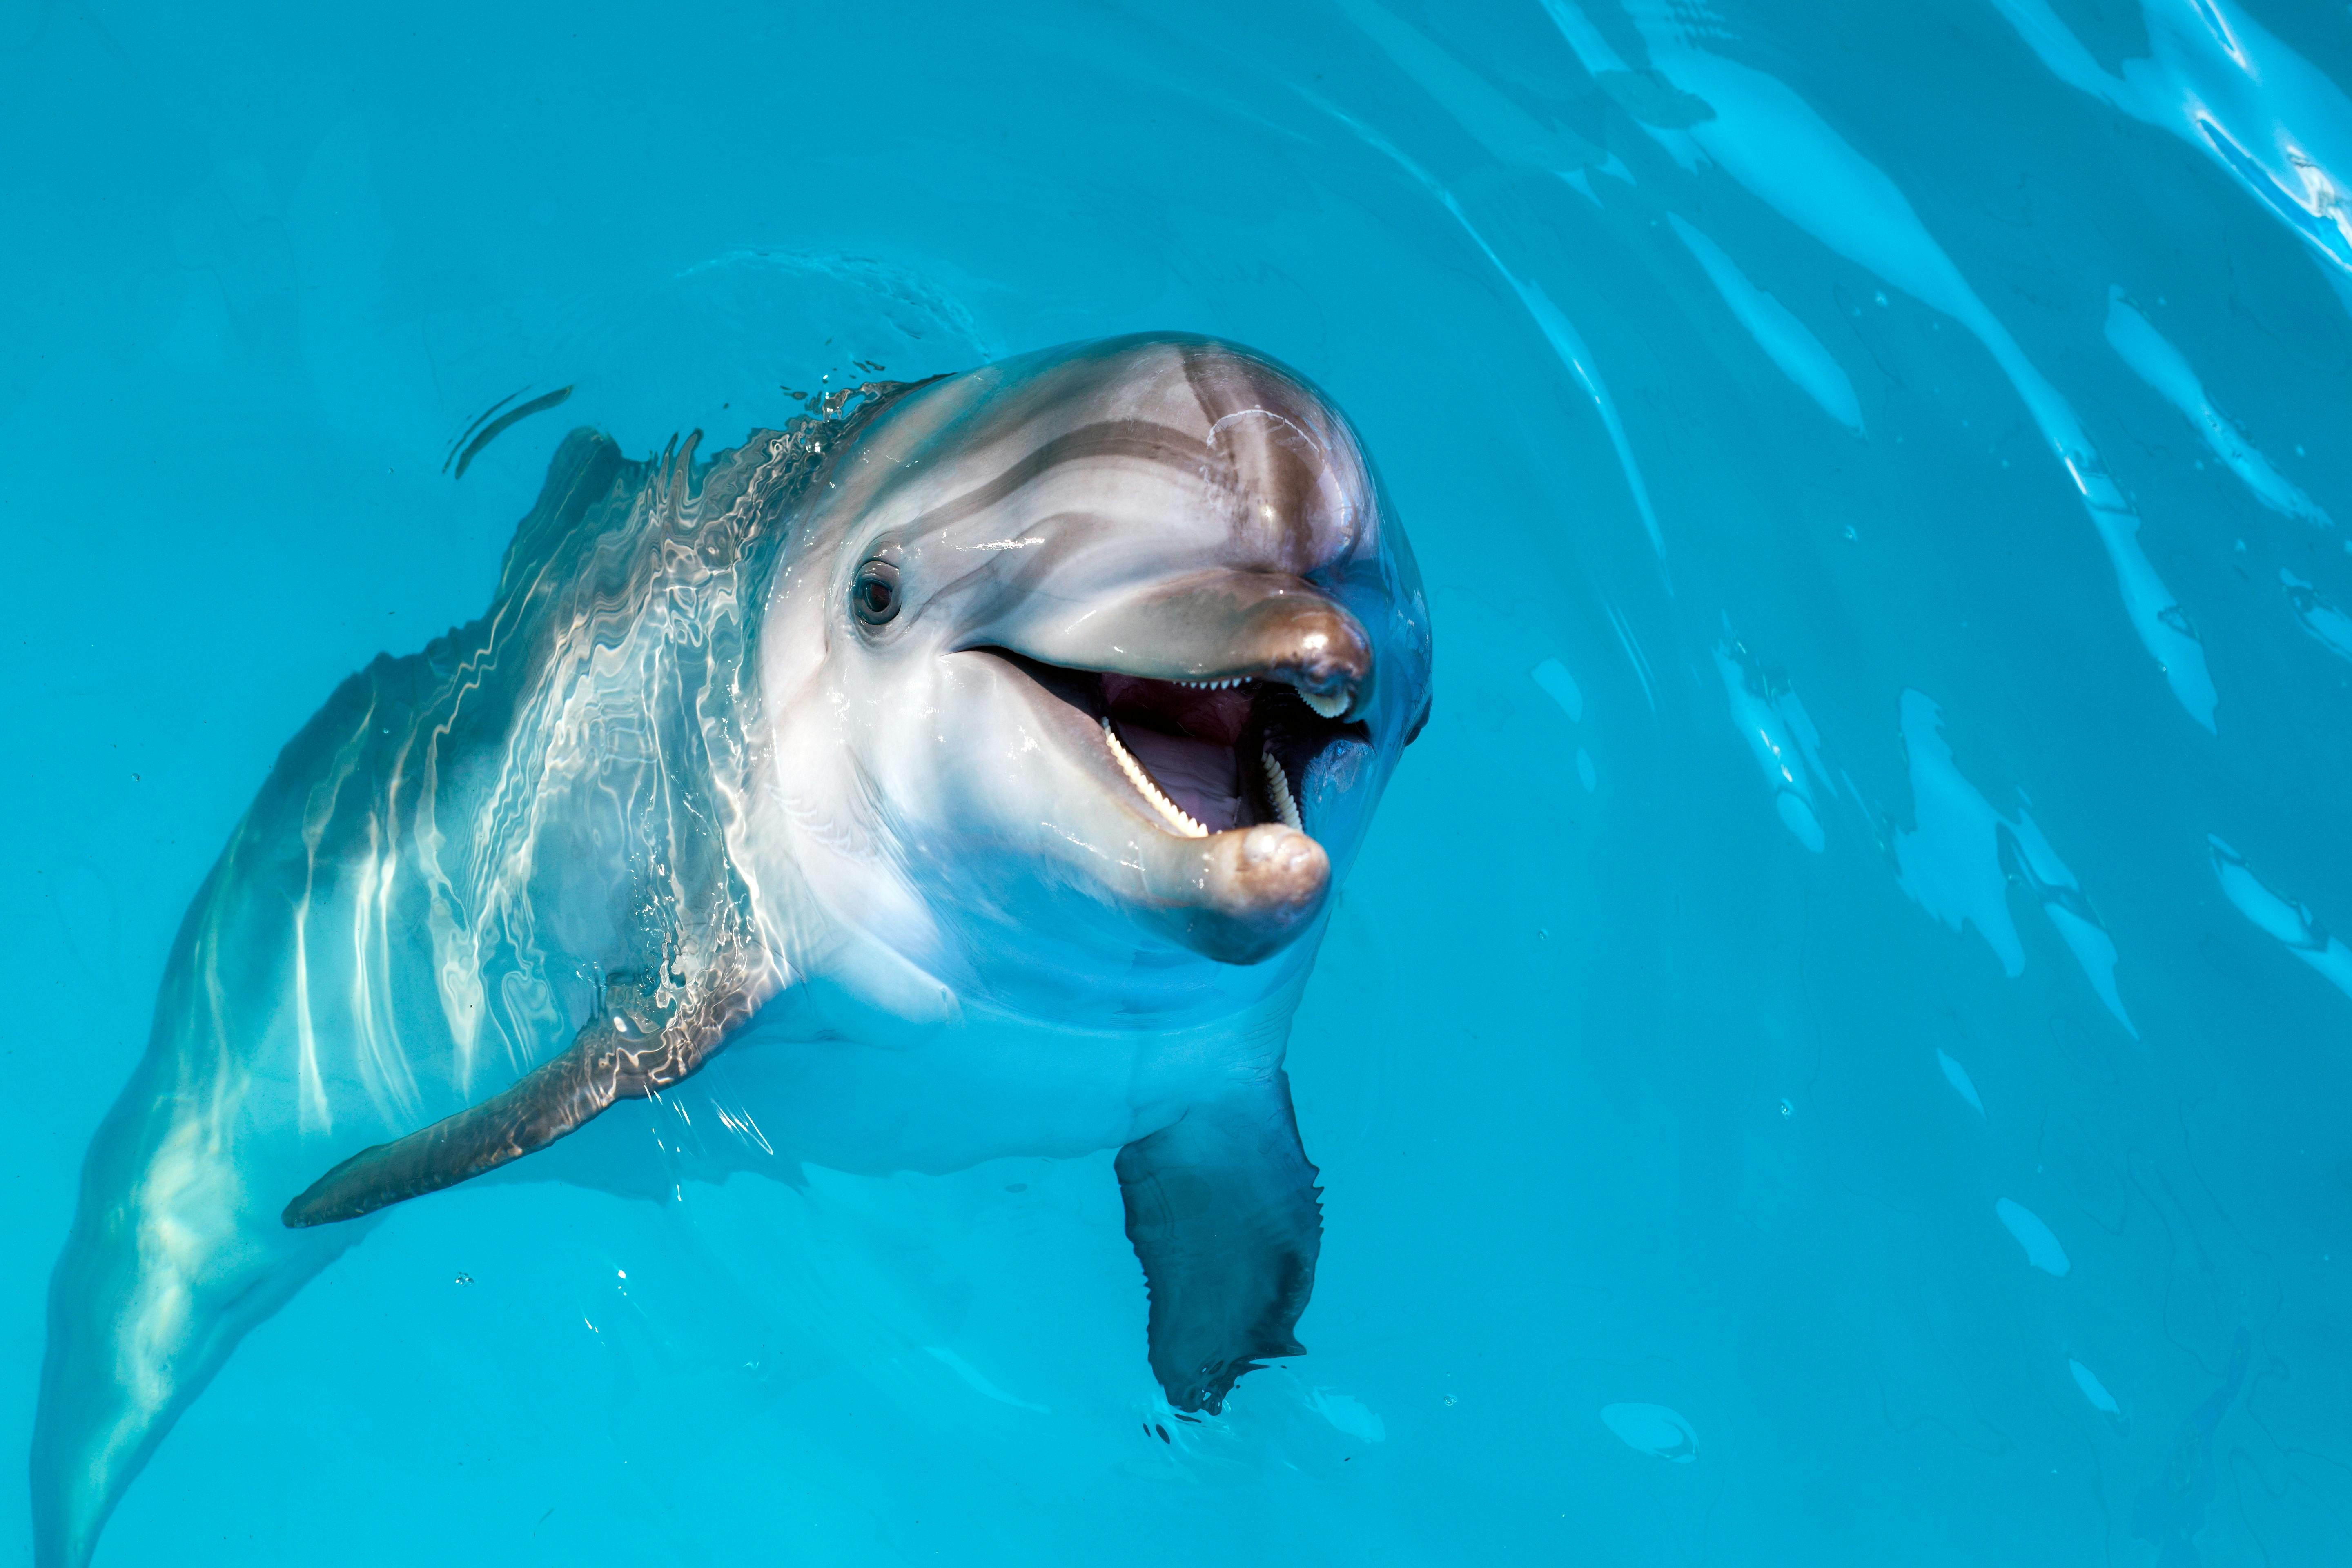 Dolphin encounter at Atlantis Dubai